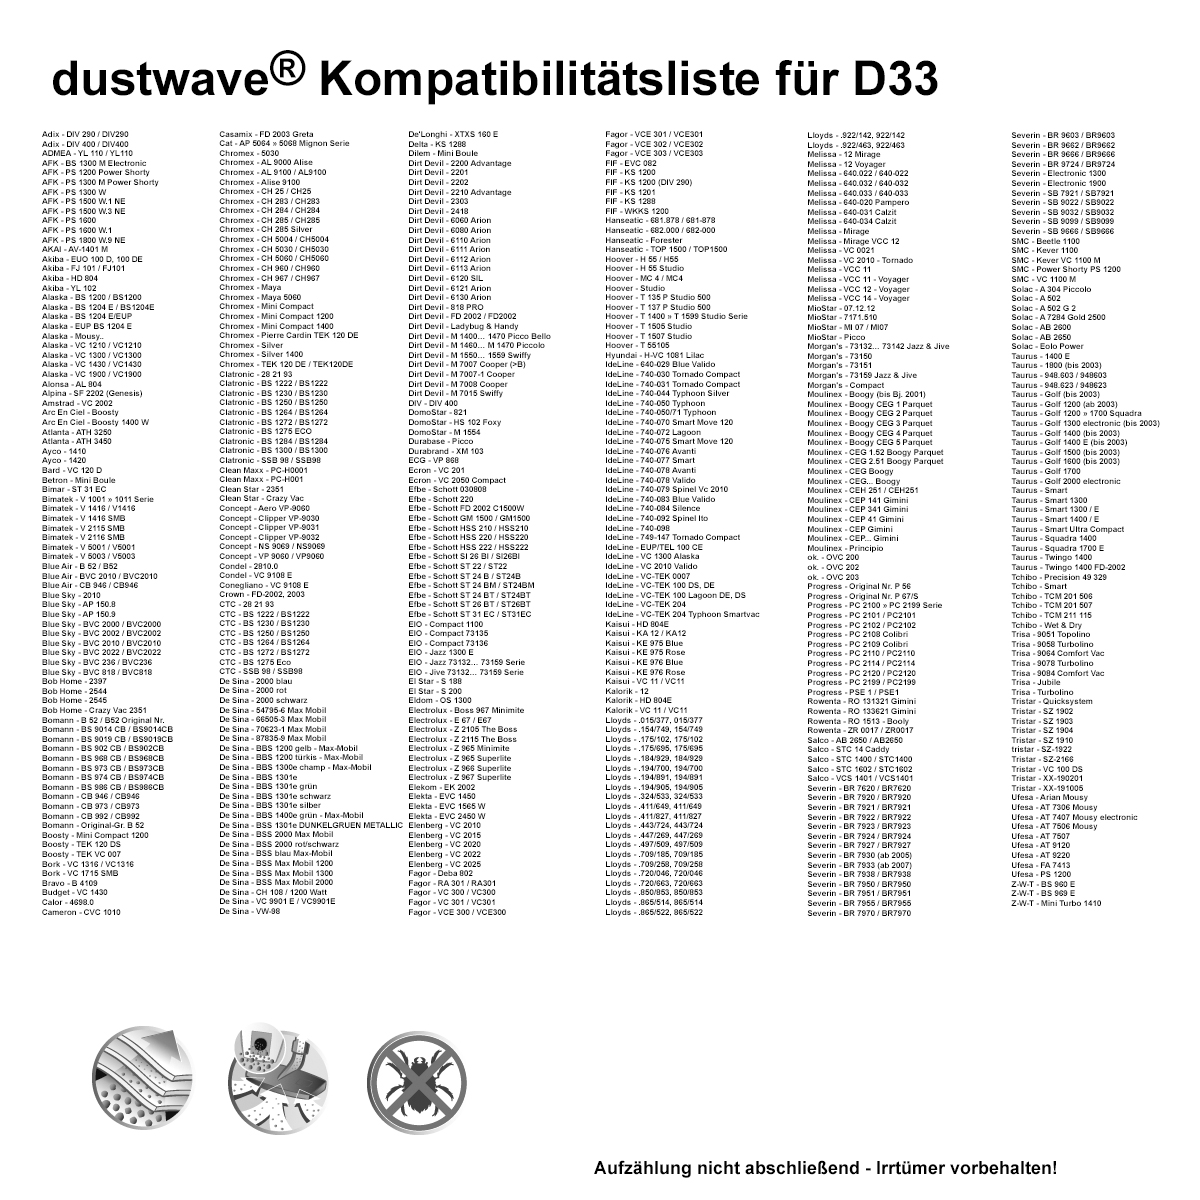 Dustwave® 20 Staubsaugerbeutel für Bimatek V 2115 SMB - hocheffizient, mehrlagiges Mikrovlies mit Hygieneverschluss - Made in Germany